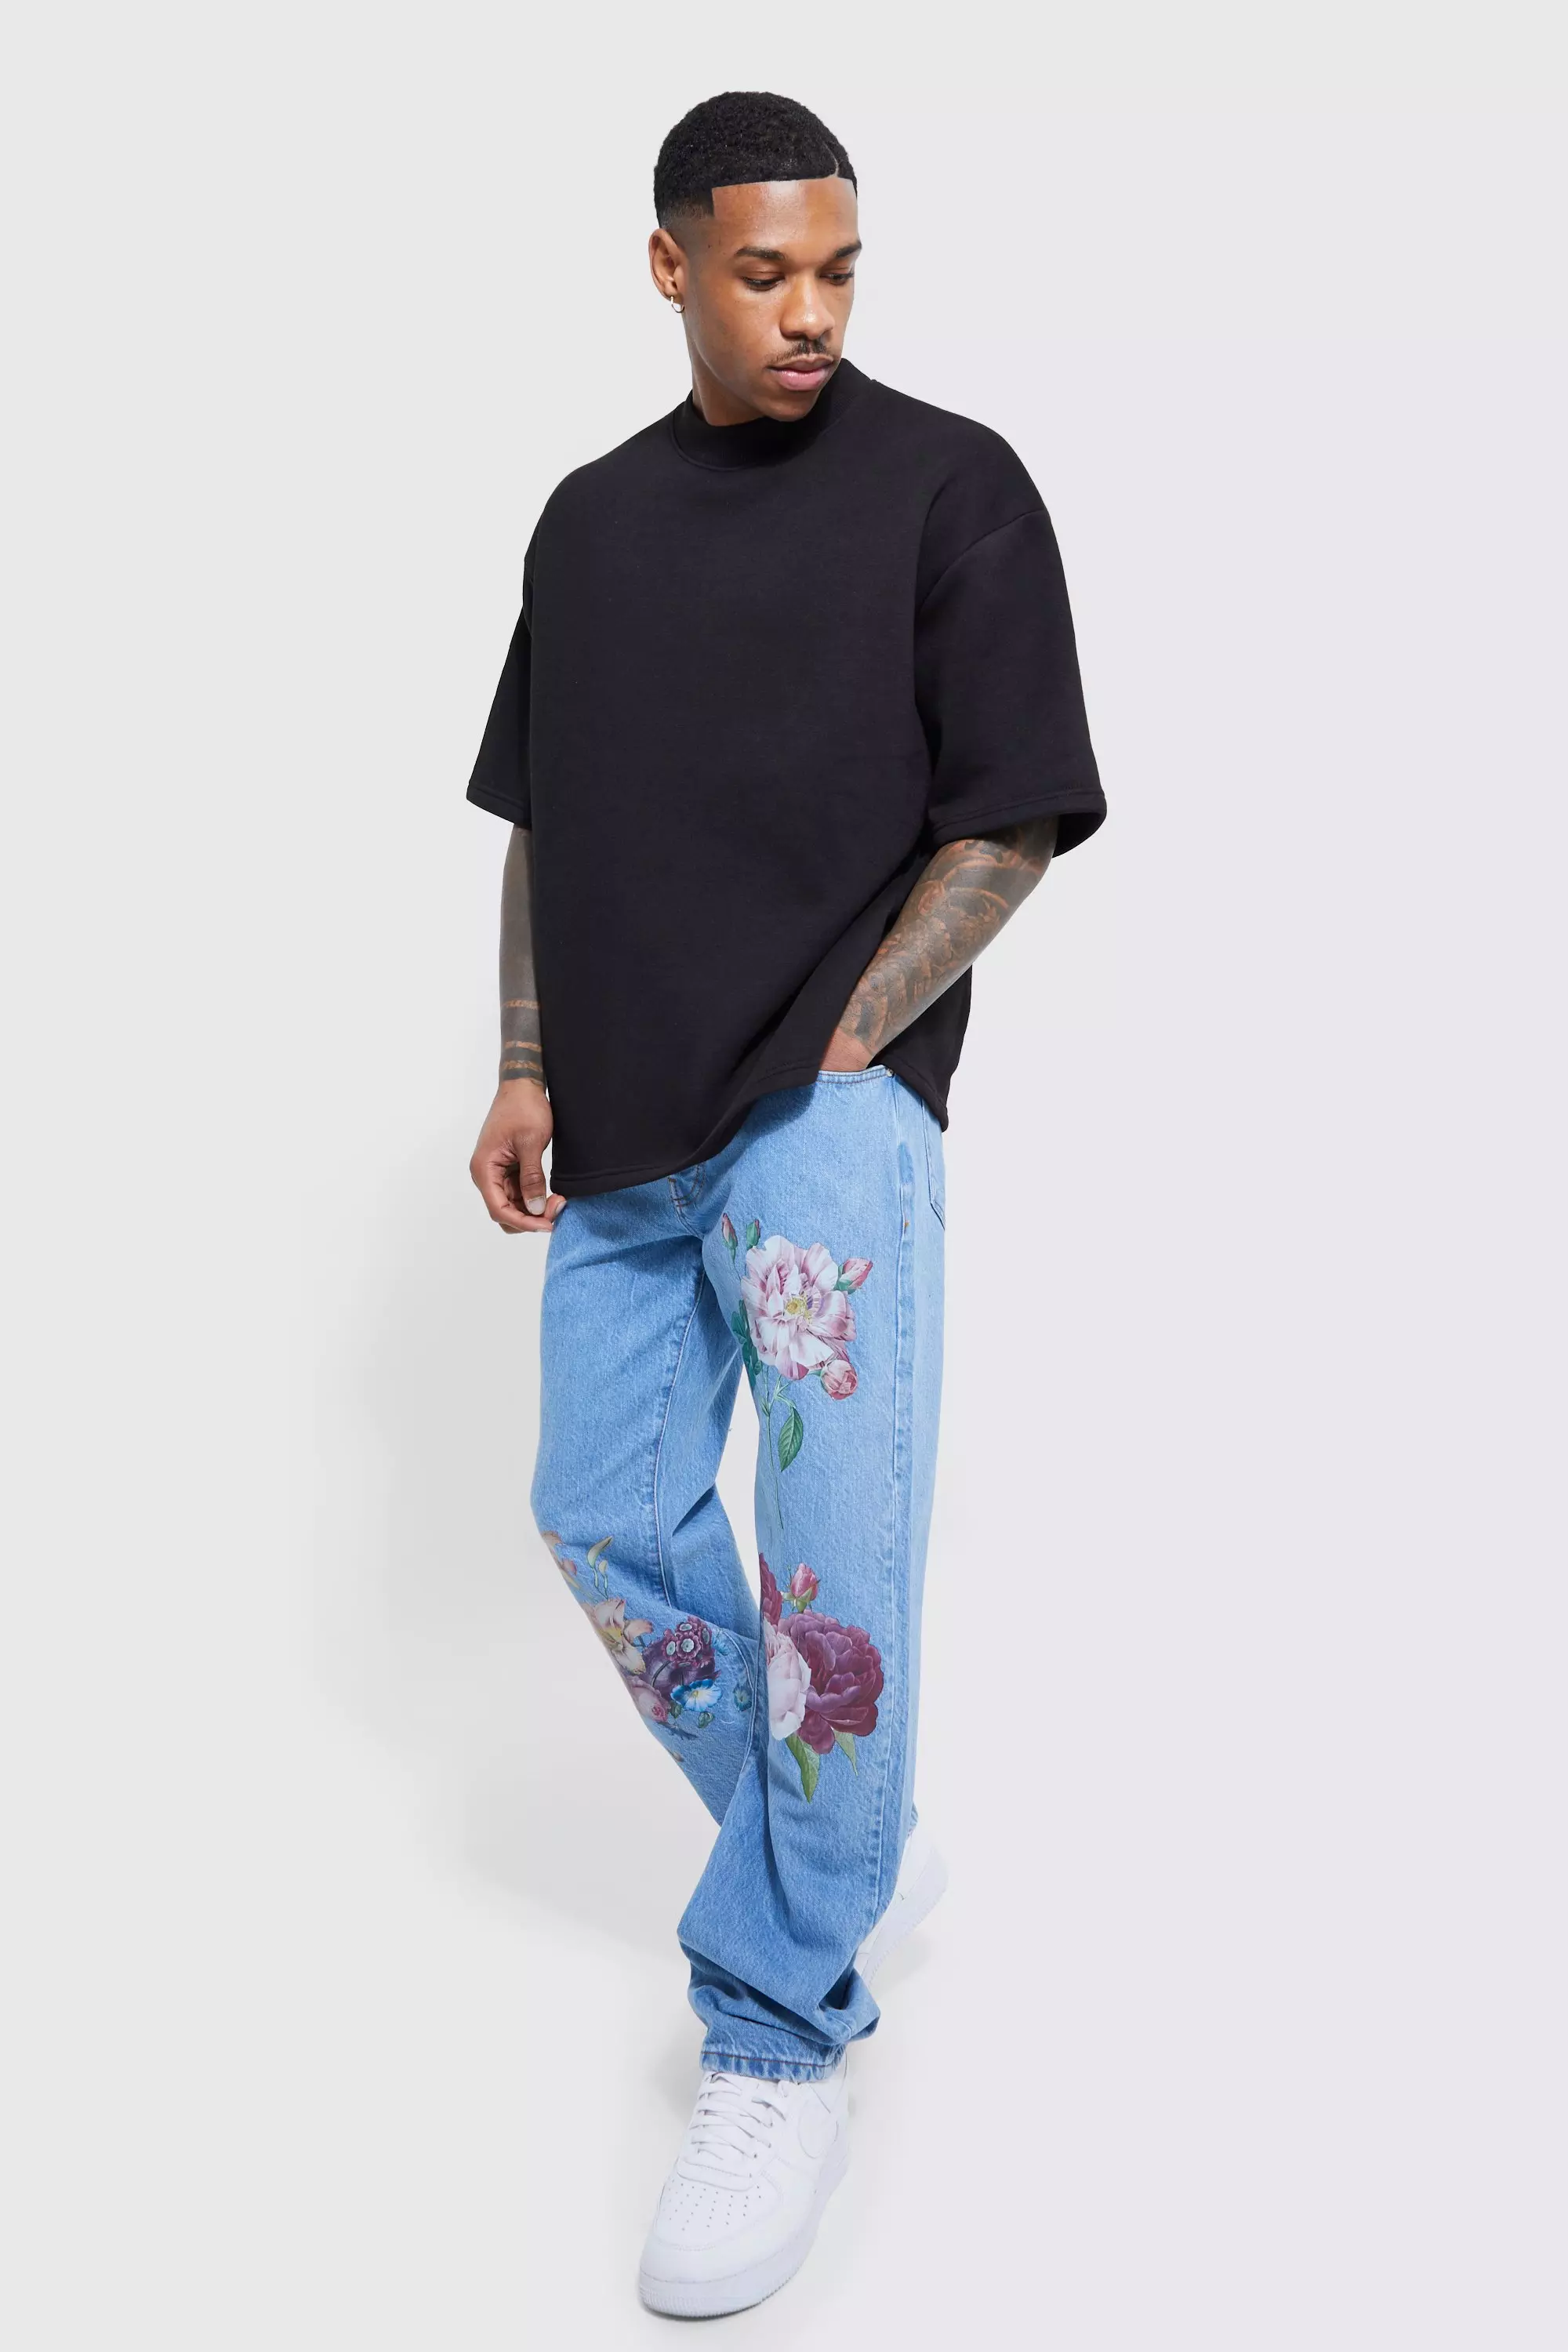 Flower Print Full Length Jeans For Men And Women Stylish